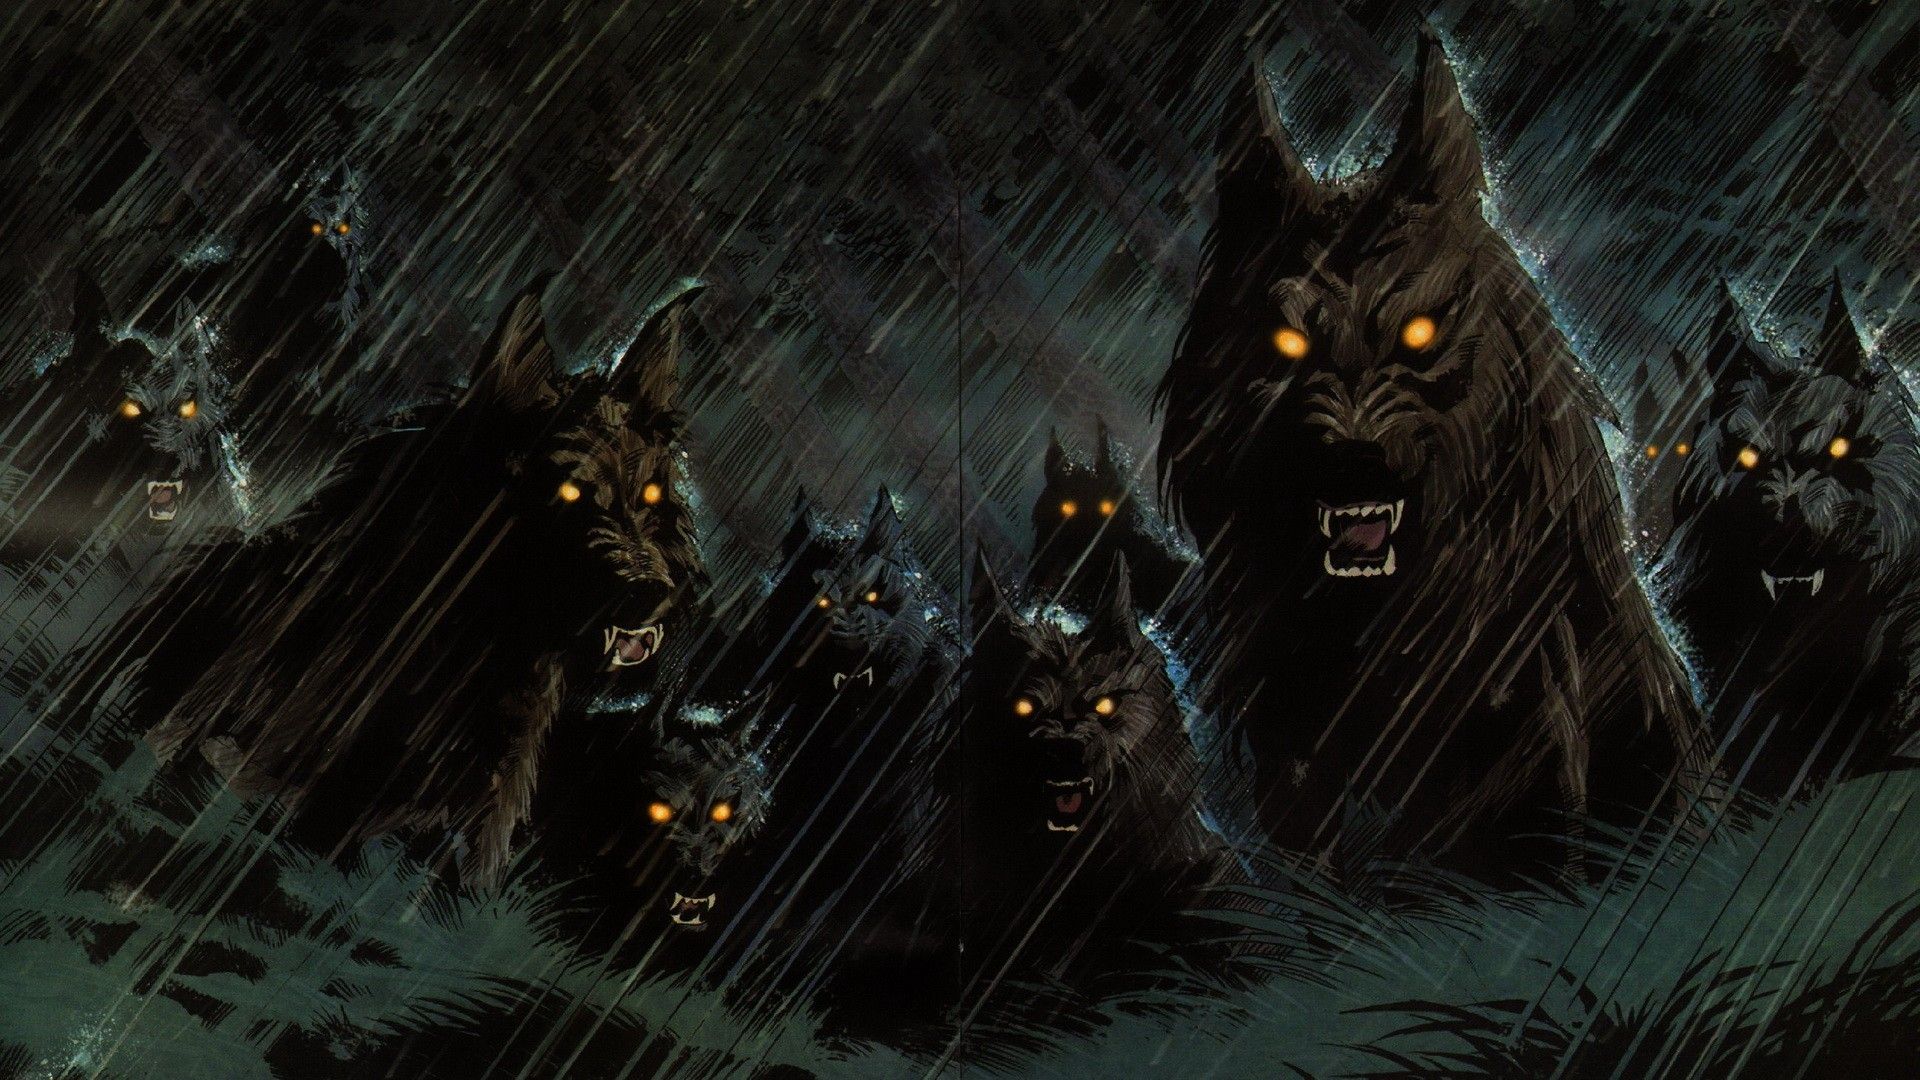 Dark scary wolfs